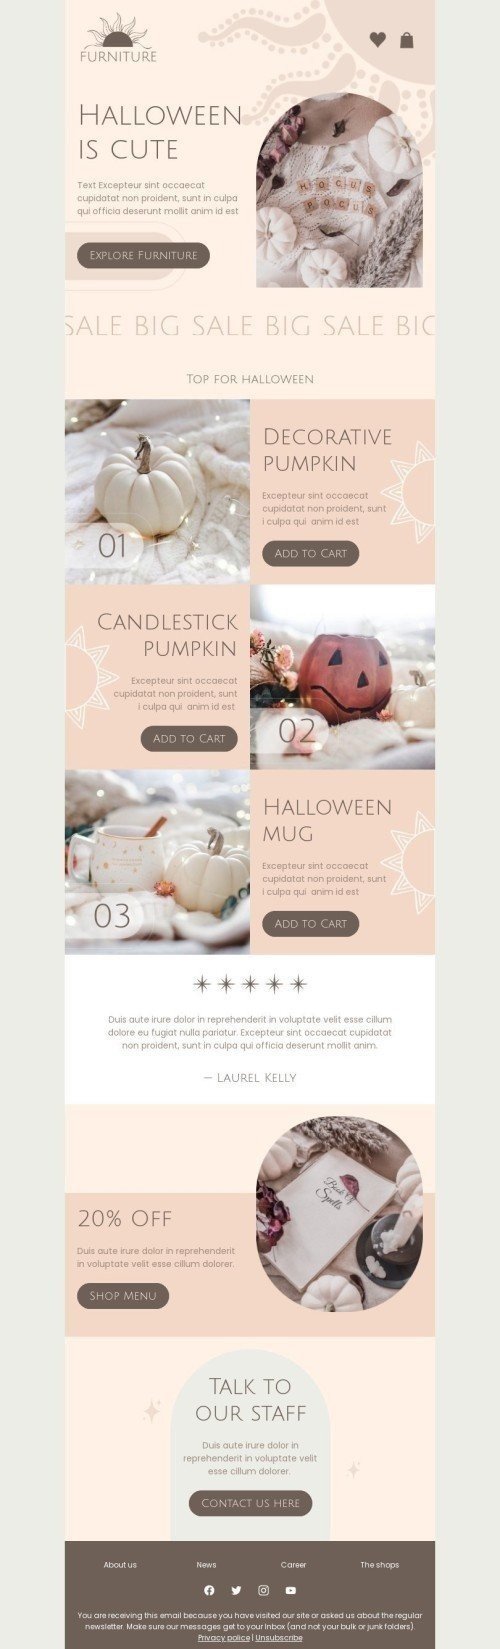 Modello Email Halloween «Halloween è carino» per il settore industriale di Arredamento, interni e fai da te Visualizzazione mobile